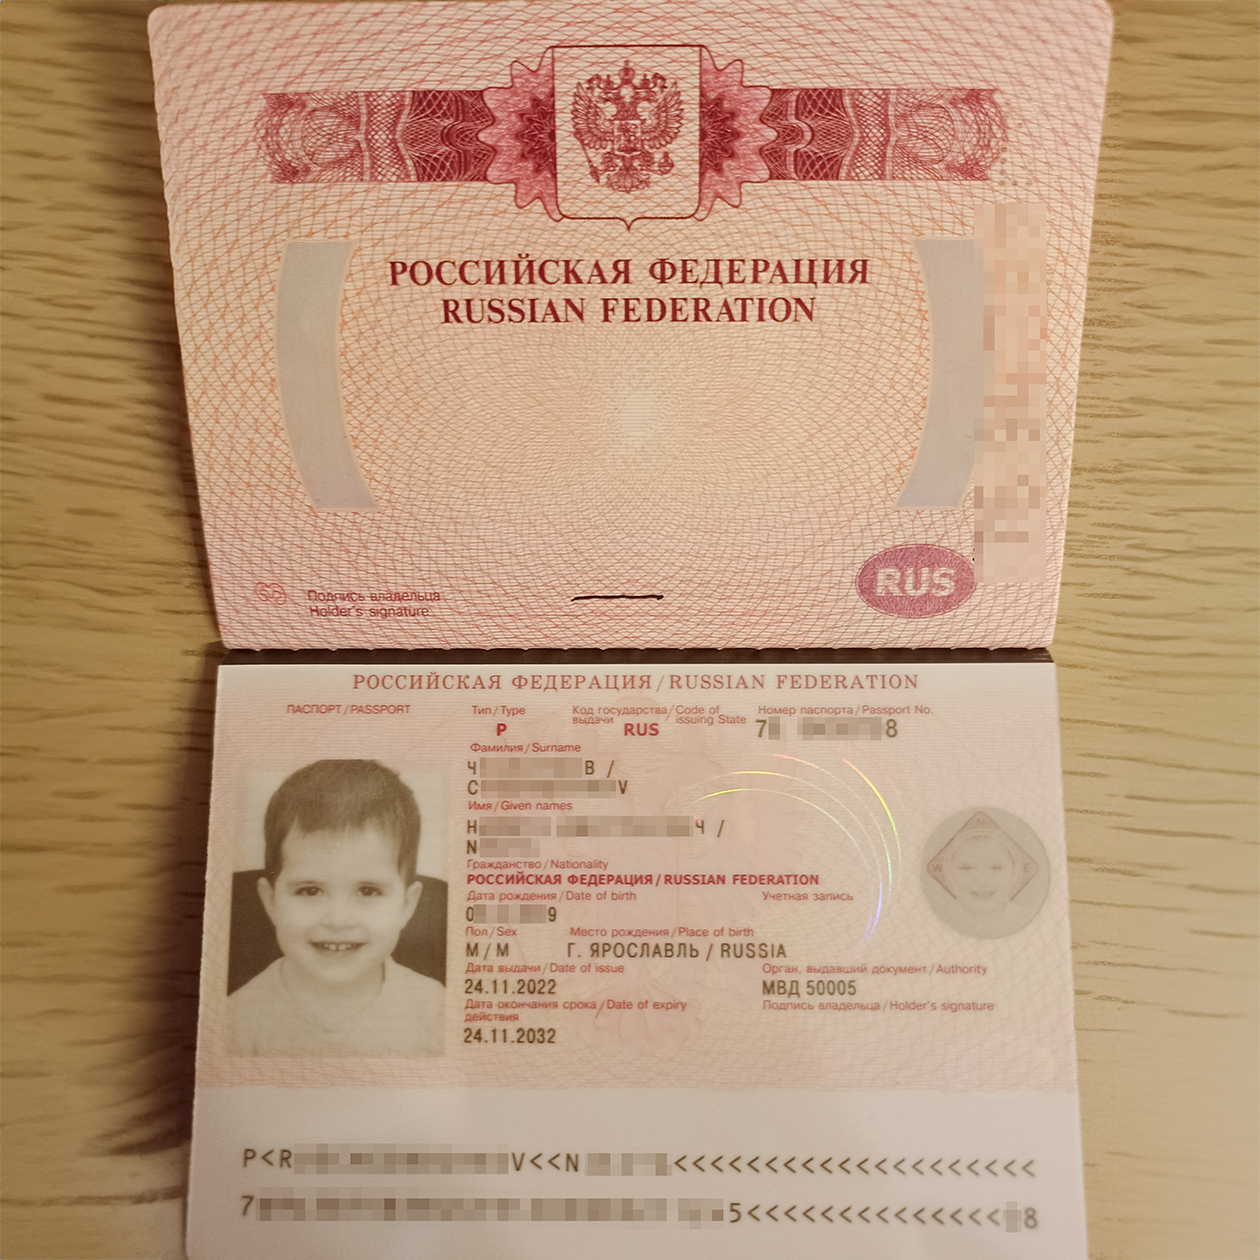 Так выглядит машиночитаемая запись в биометрическом паспорте